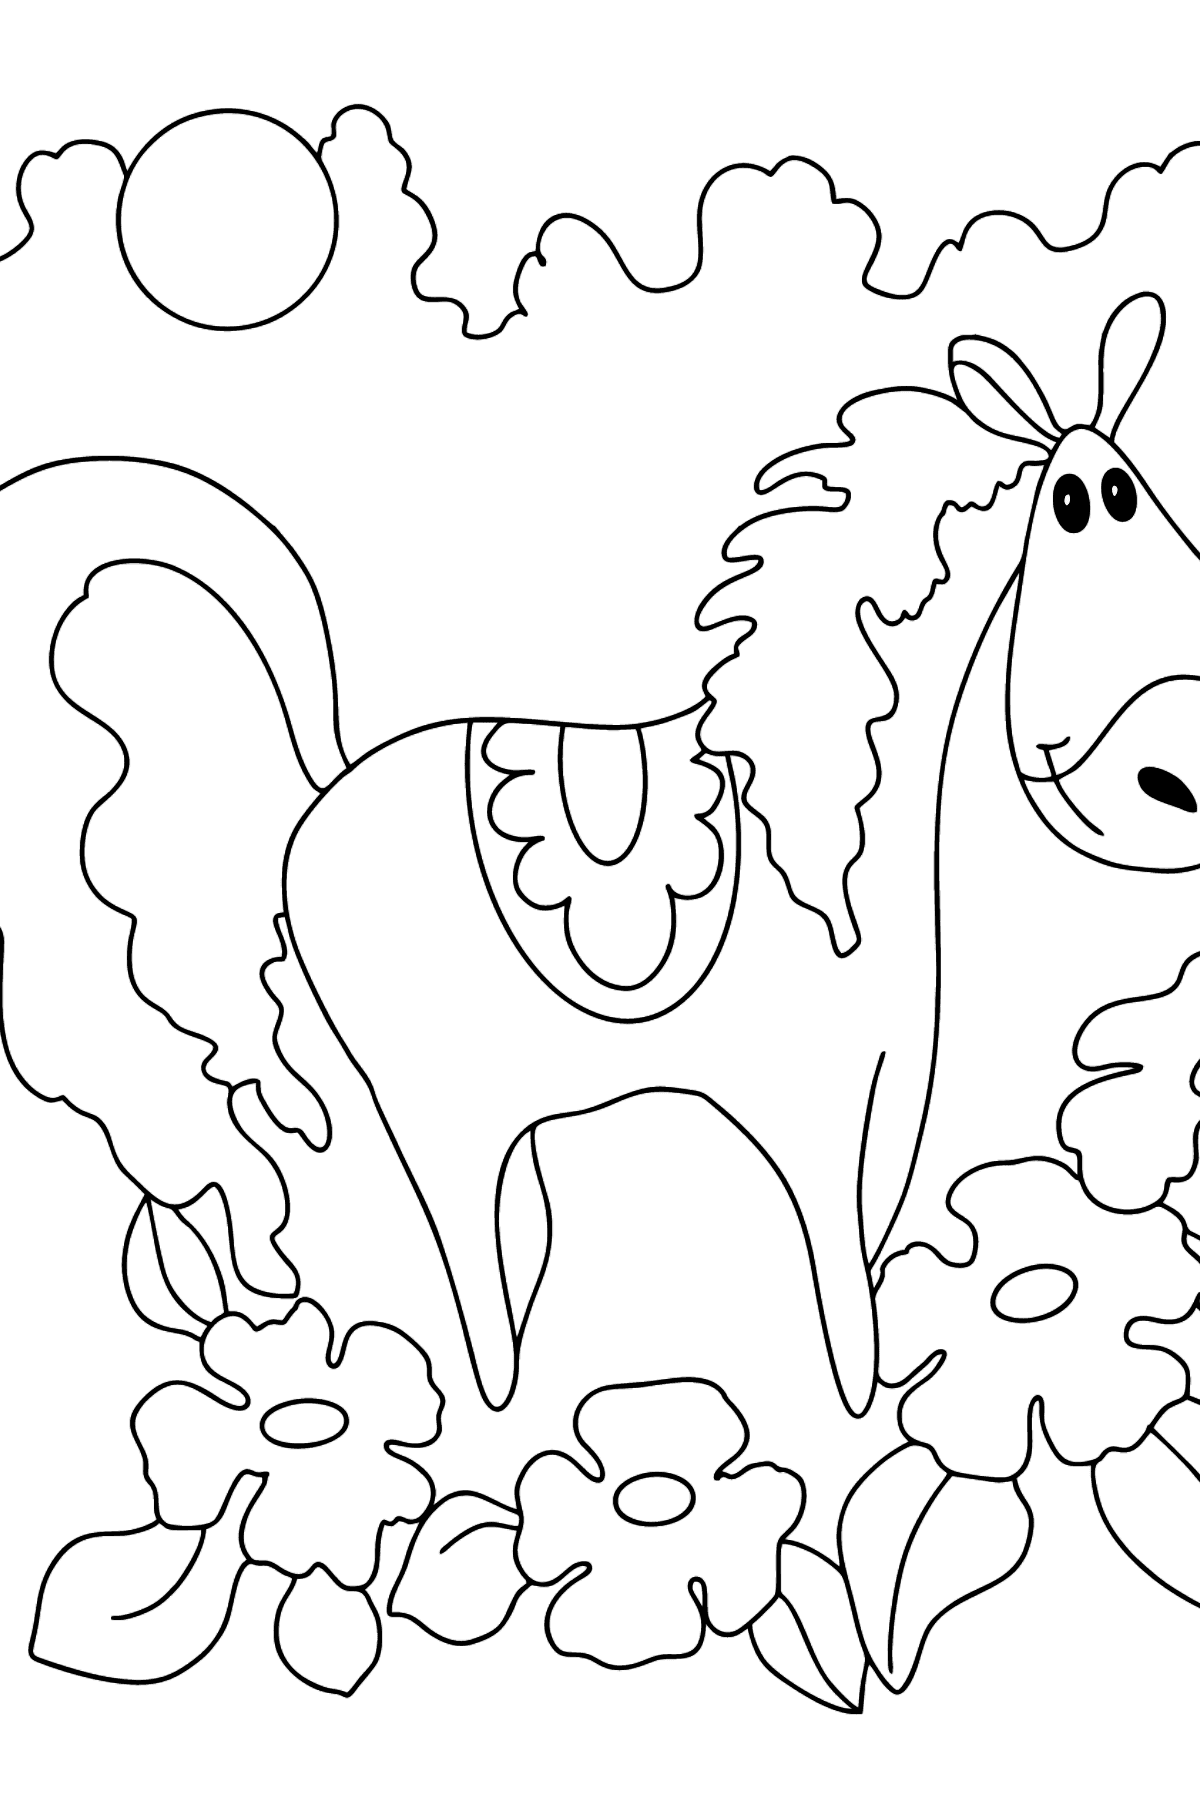 Розмальовка кінь для дітей віком від 5 років - Розмальовки для дітей